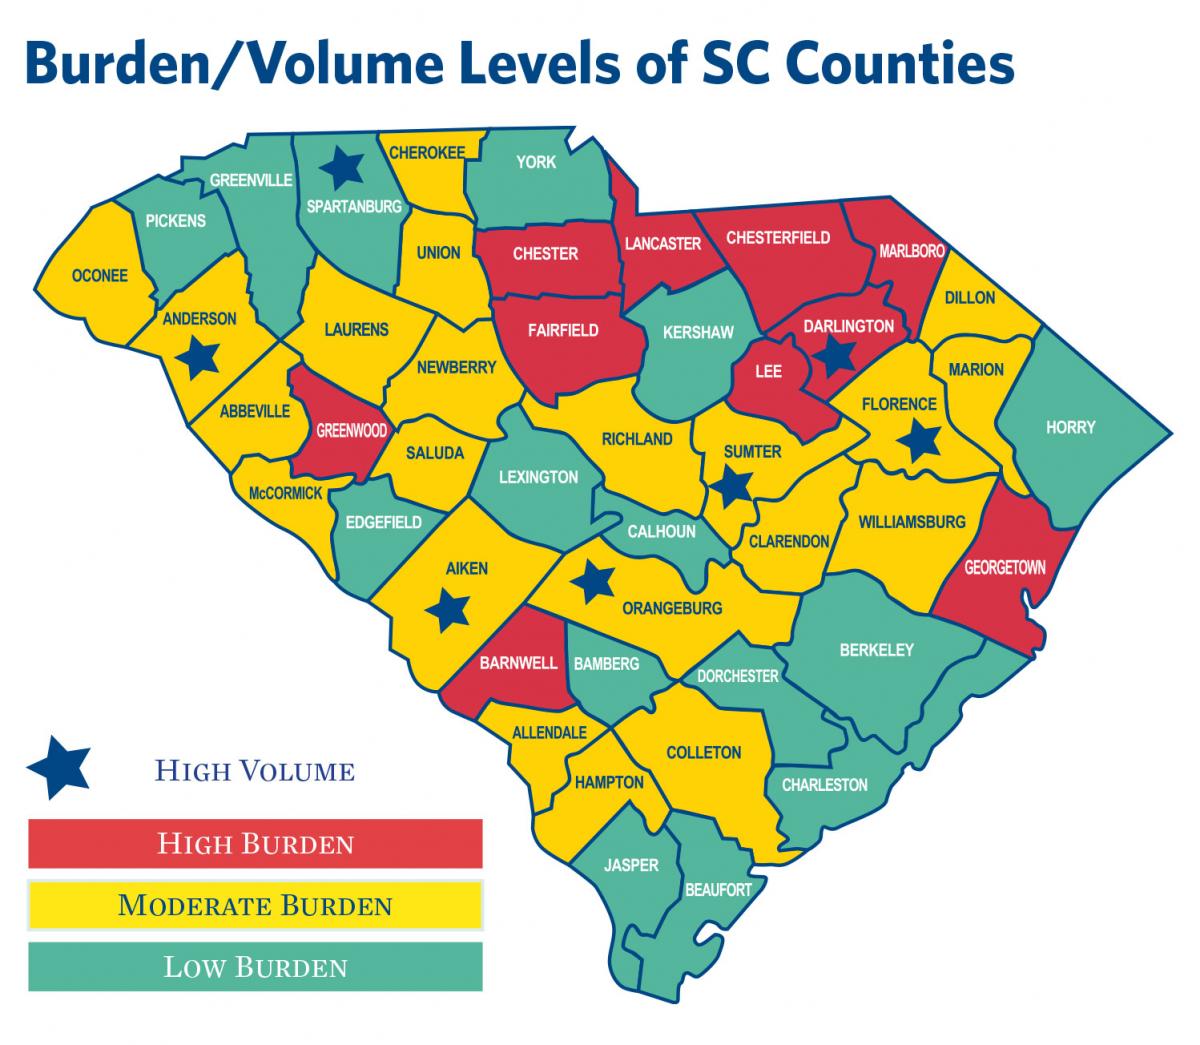 Burden/Volume Levels of SC Counties